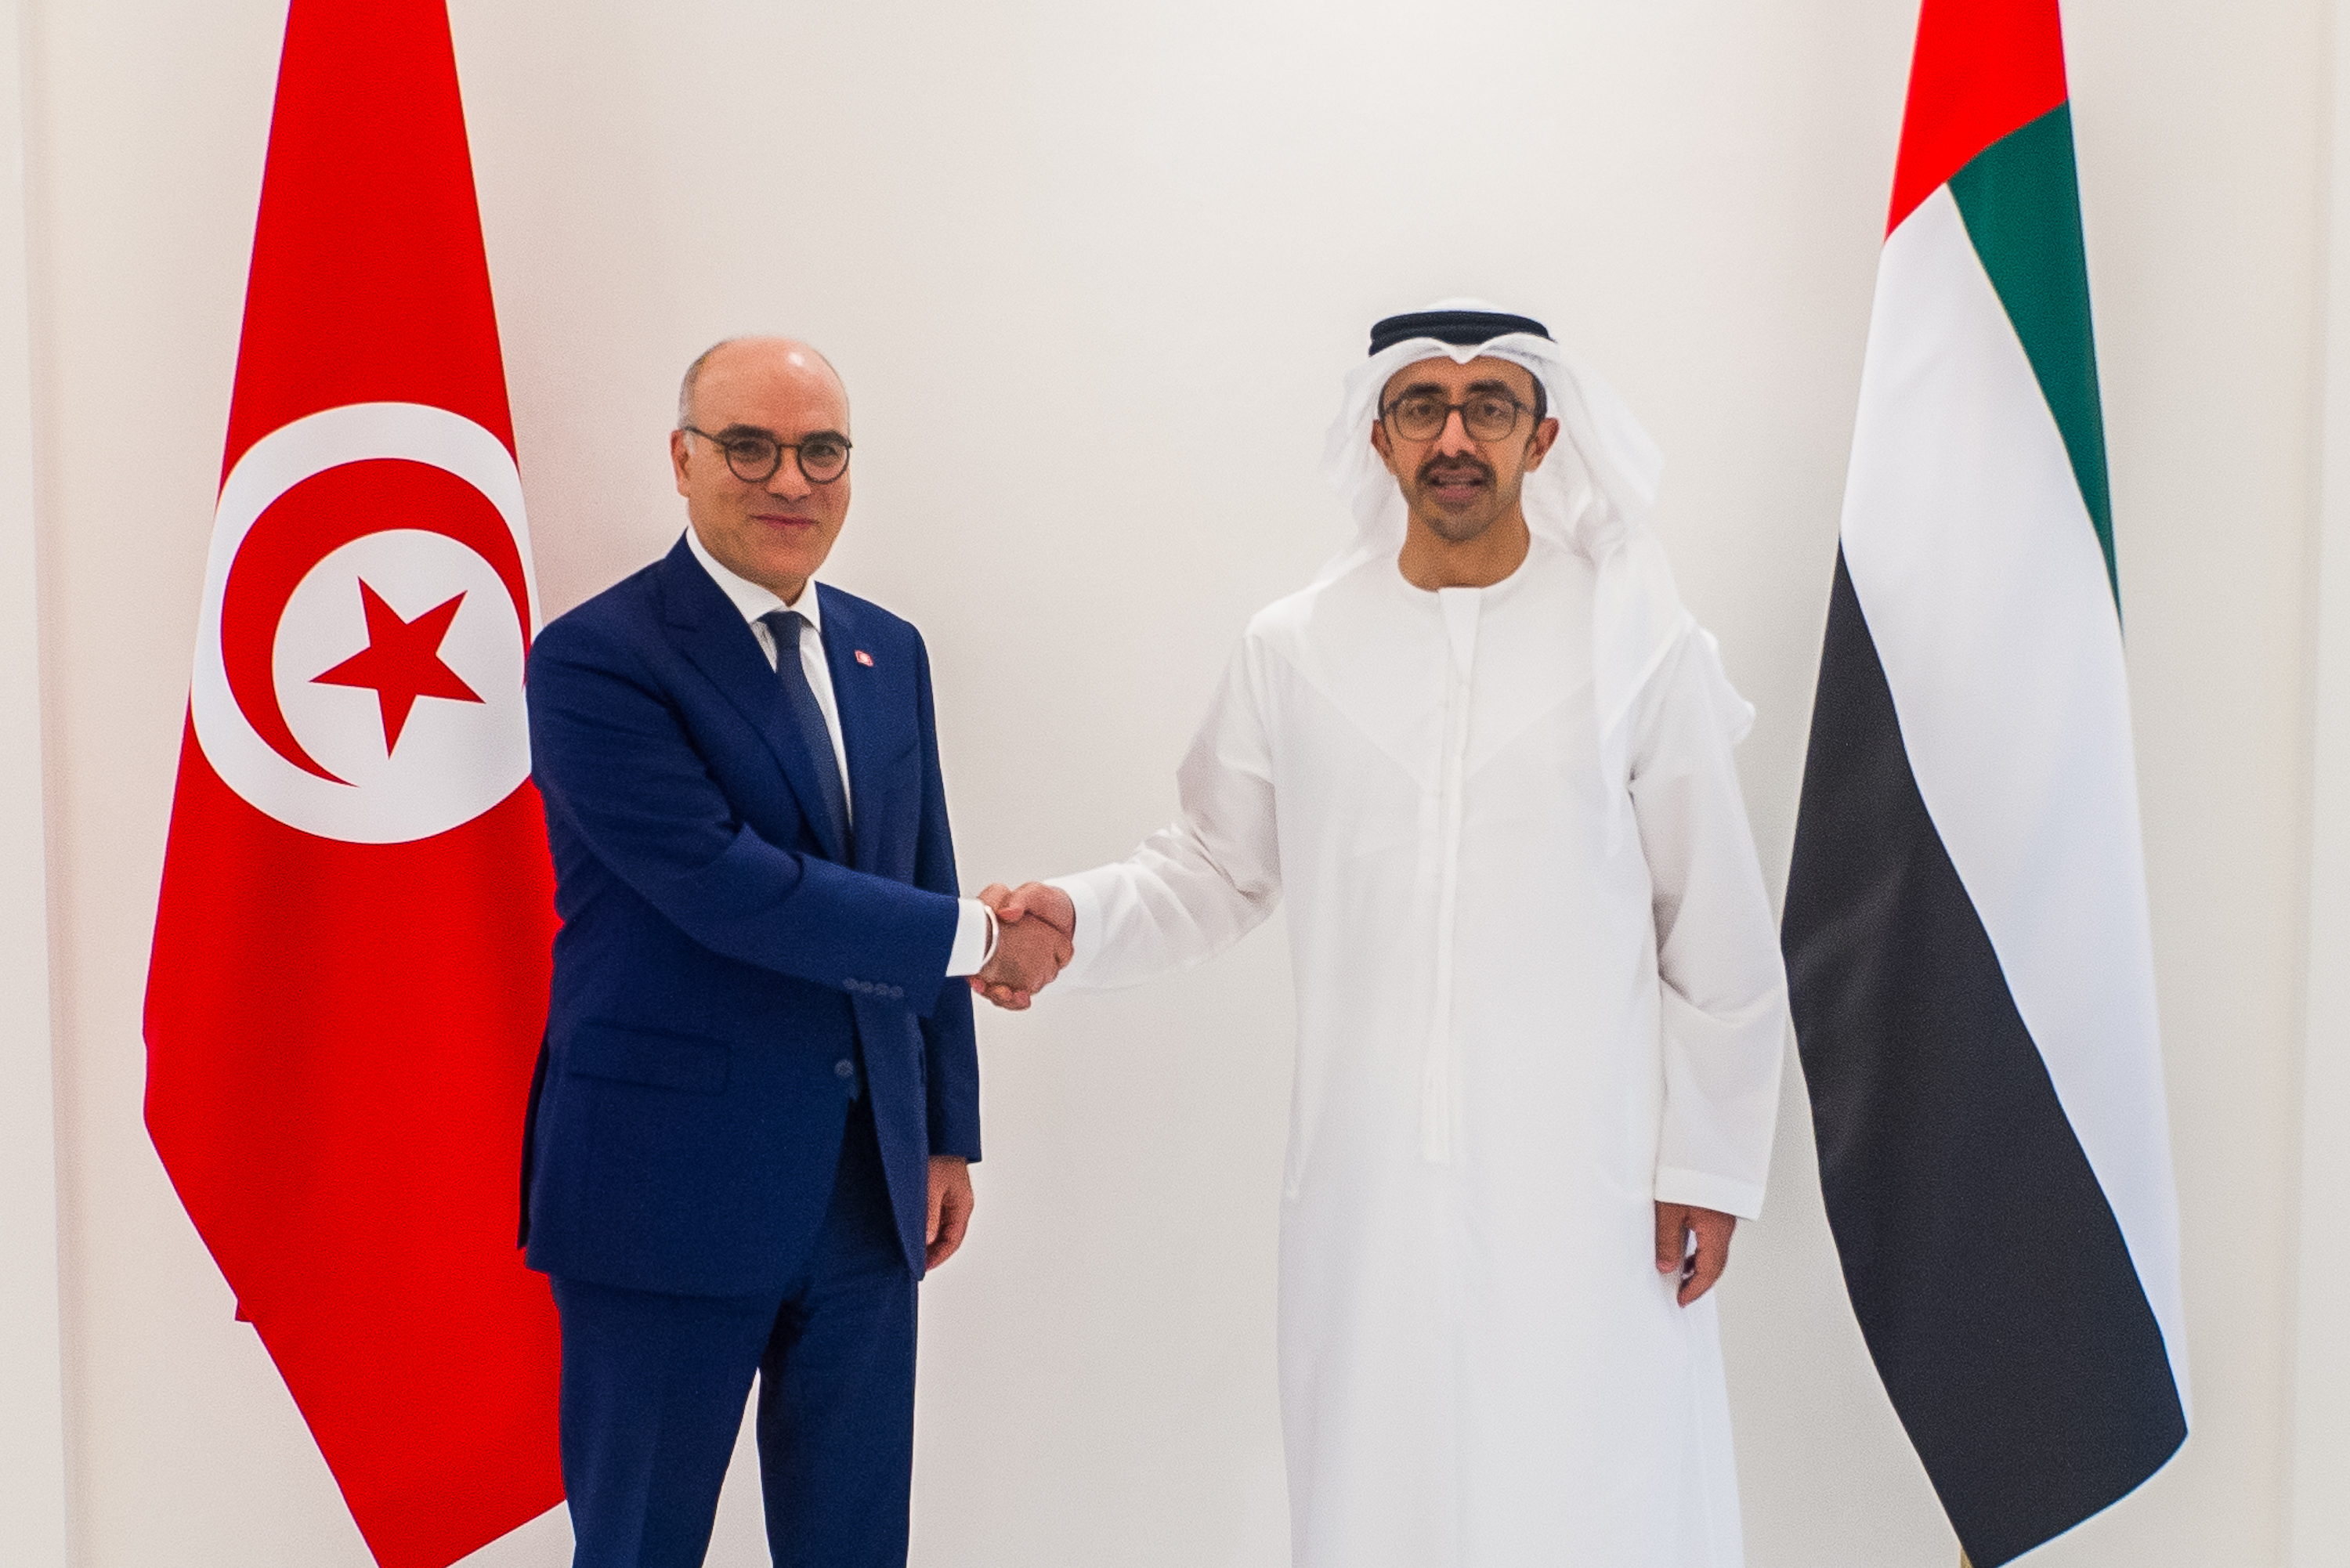 عبدالله بن زايد يستقبل وزير خارجية تونس ويبحثان العلاقات الأخوية بين البلدين